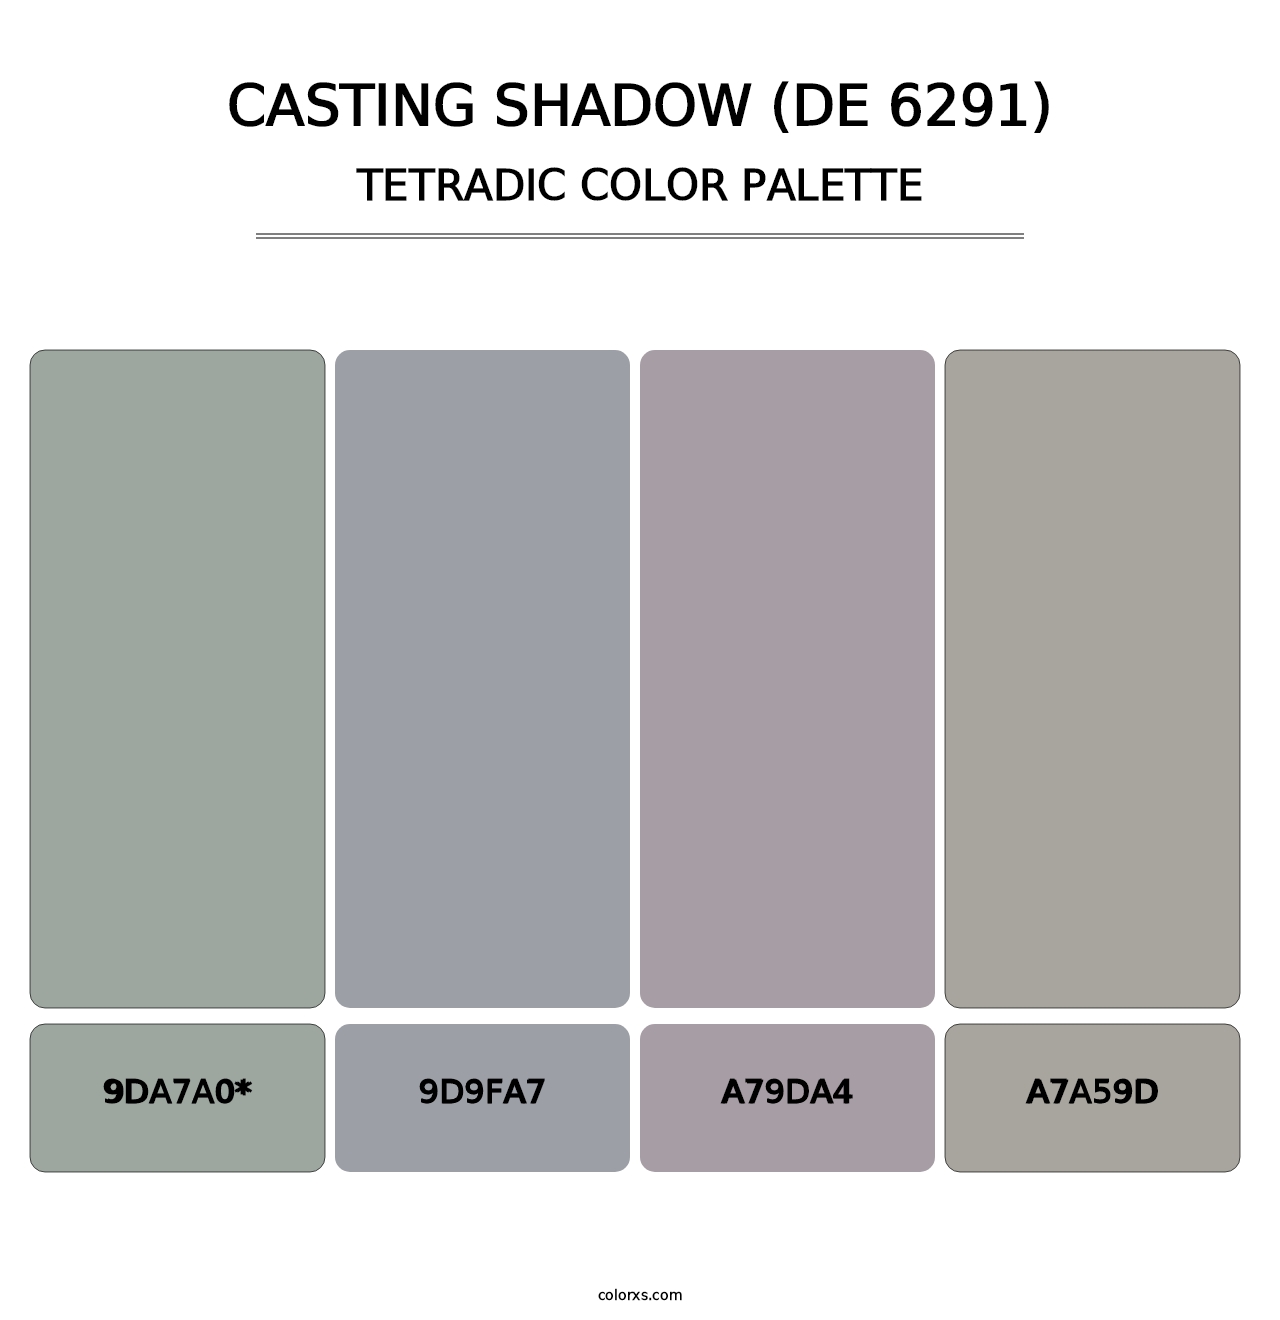 Casting Shadow (DE 6291) - Tetradic Color Palette